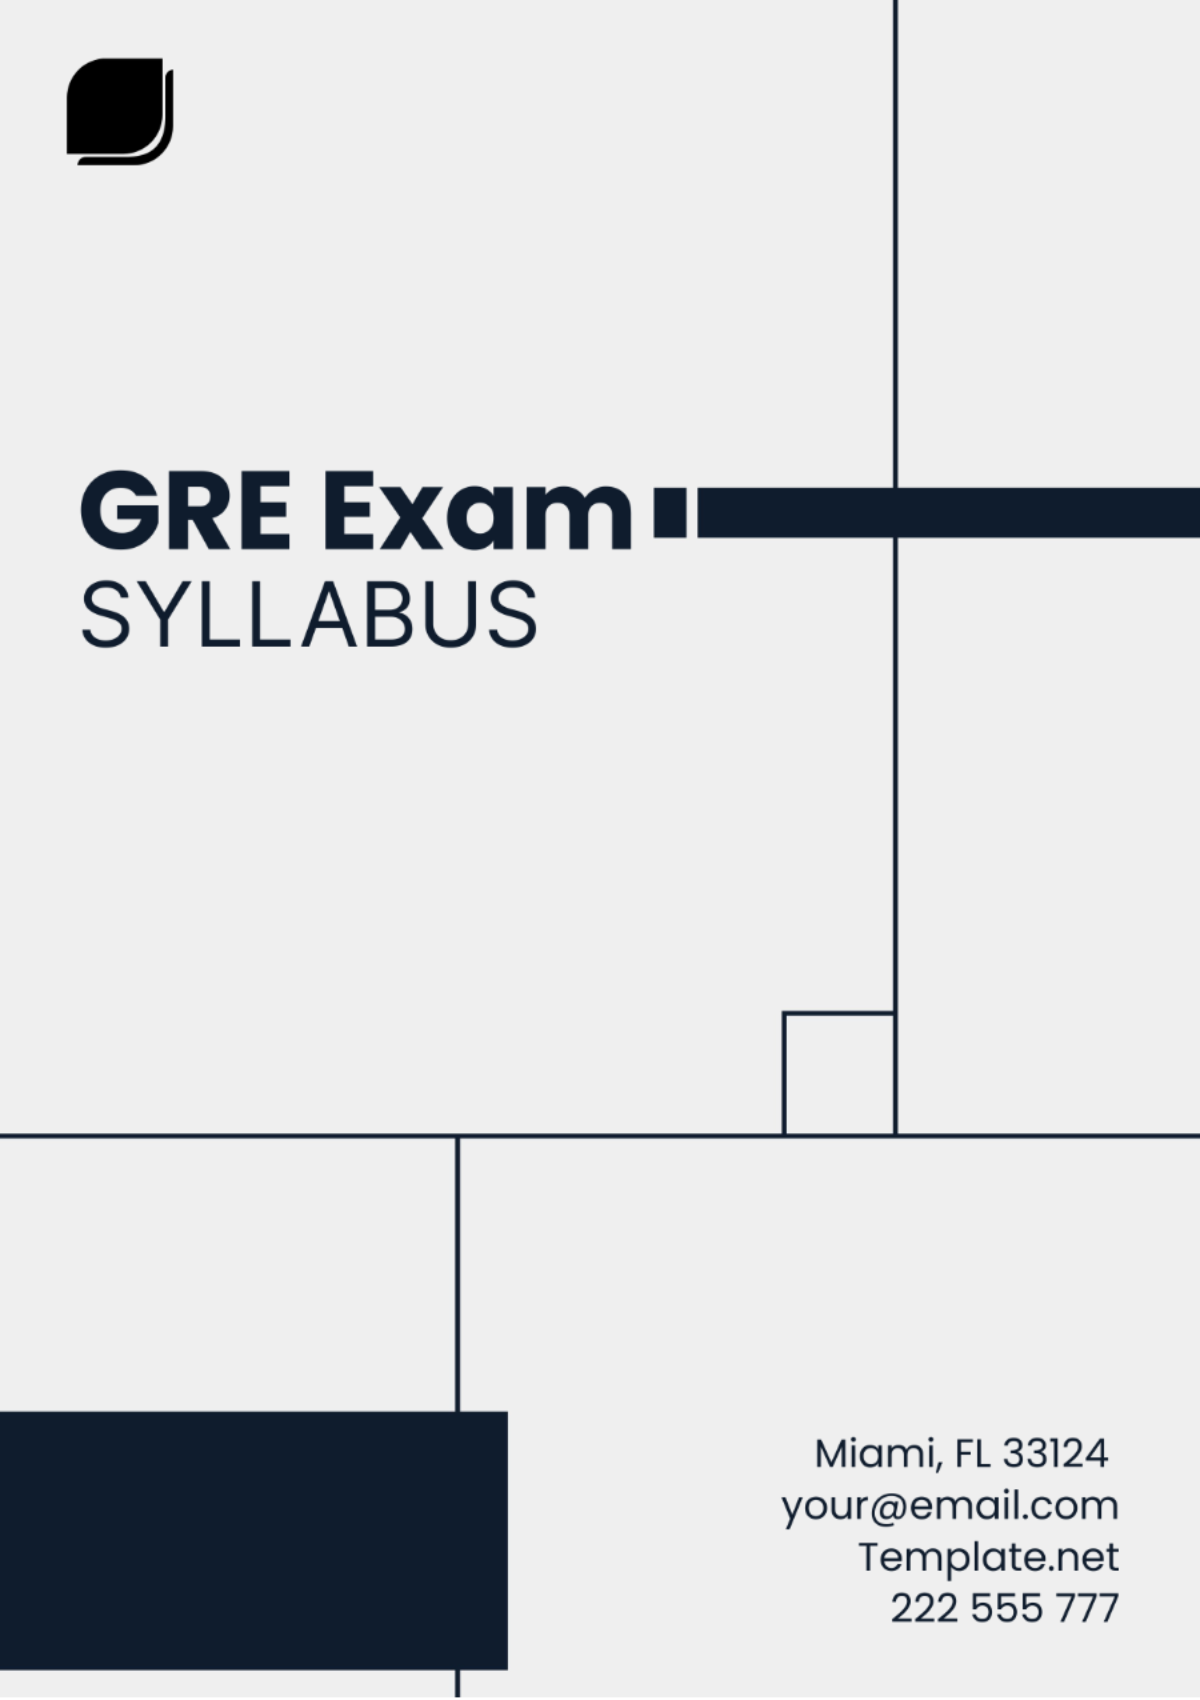 GRE Exam Syllabus Template